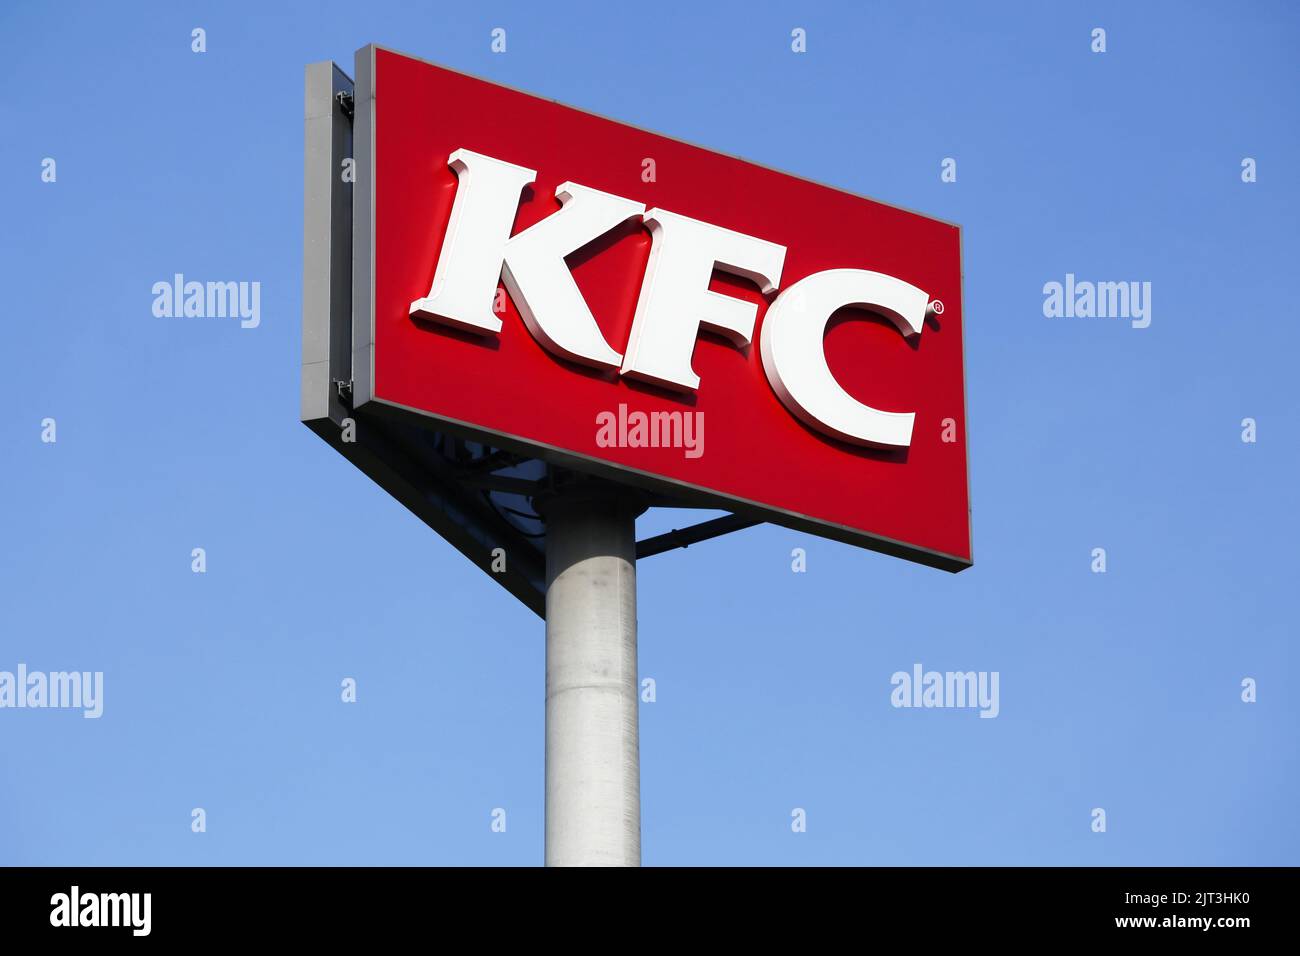 Gyhum, Alemania - 22 de julio de 2018: Logotipo de KFC en un poste. KFC es una cadena de restaurantes de comida rápida que se especializa en pollo frito Foto de stock